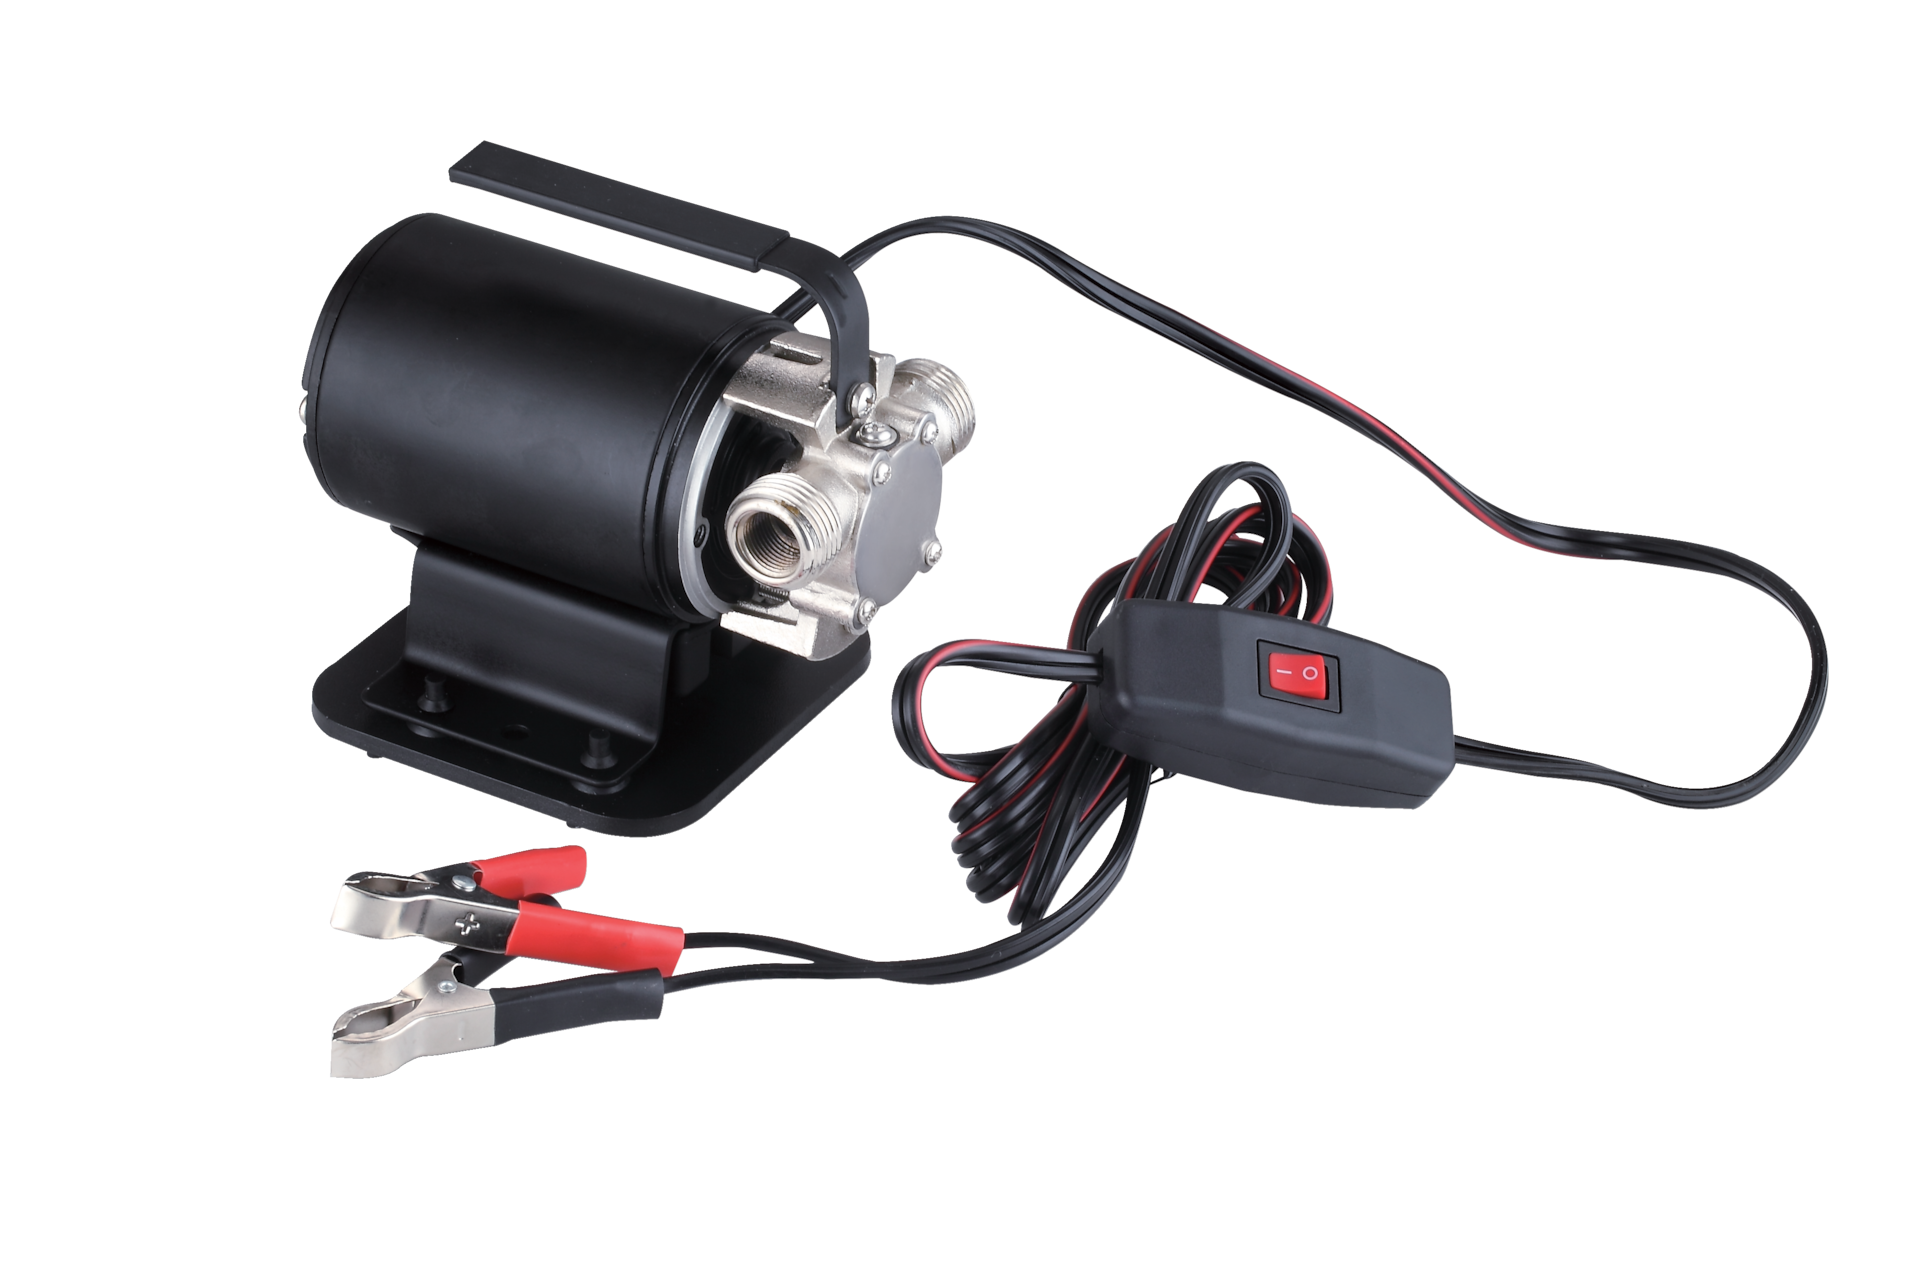 Pompe portable pour perceuse électrique - Pompe à grand débit - Pompe  livrée standard avec deux connecteurs pour